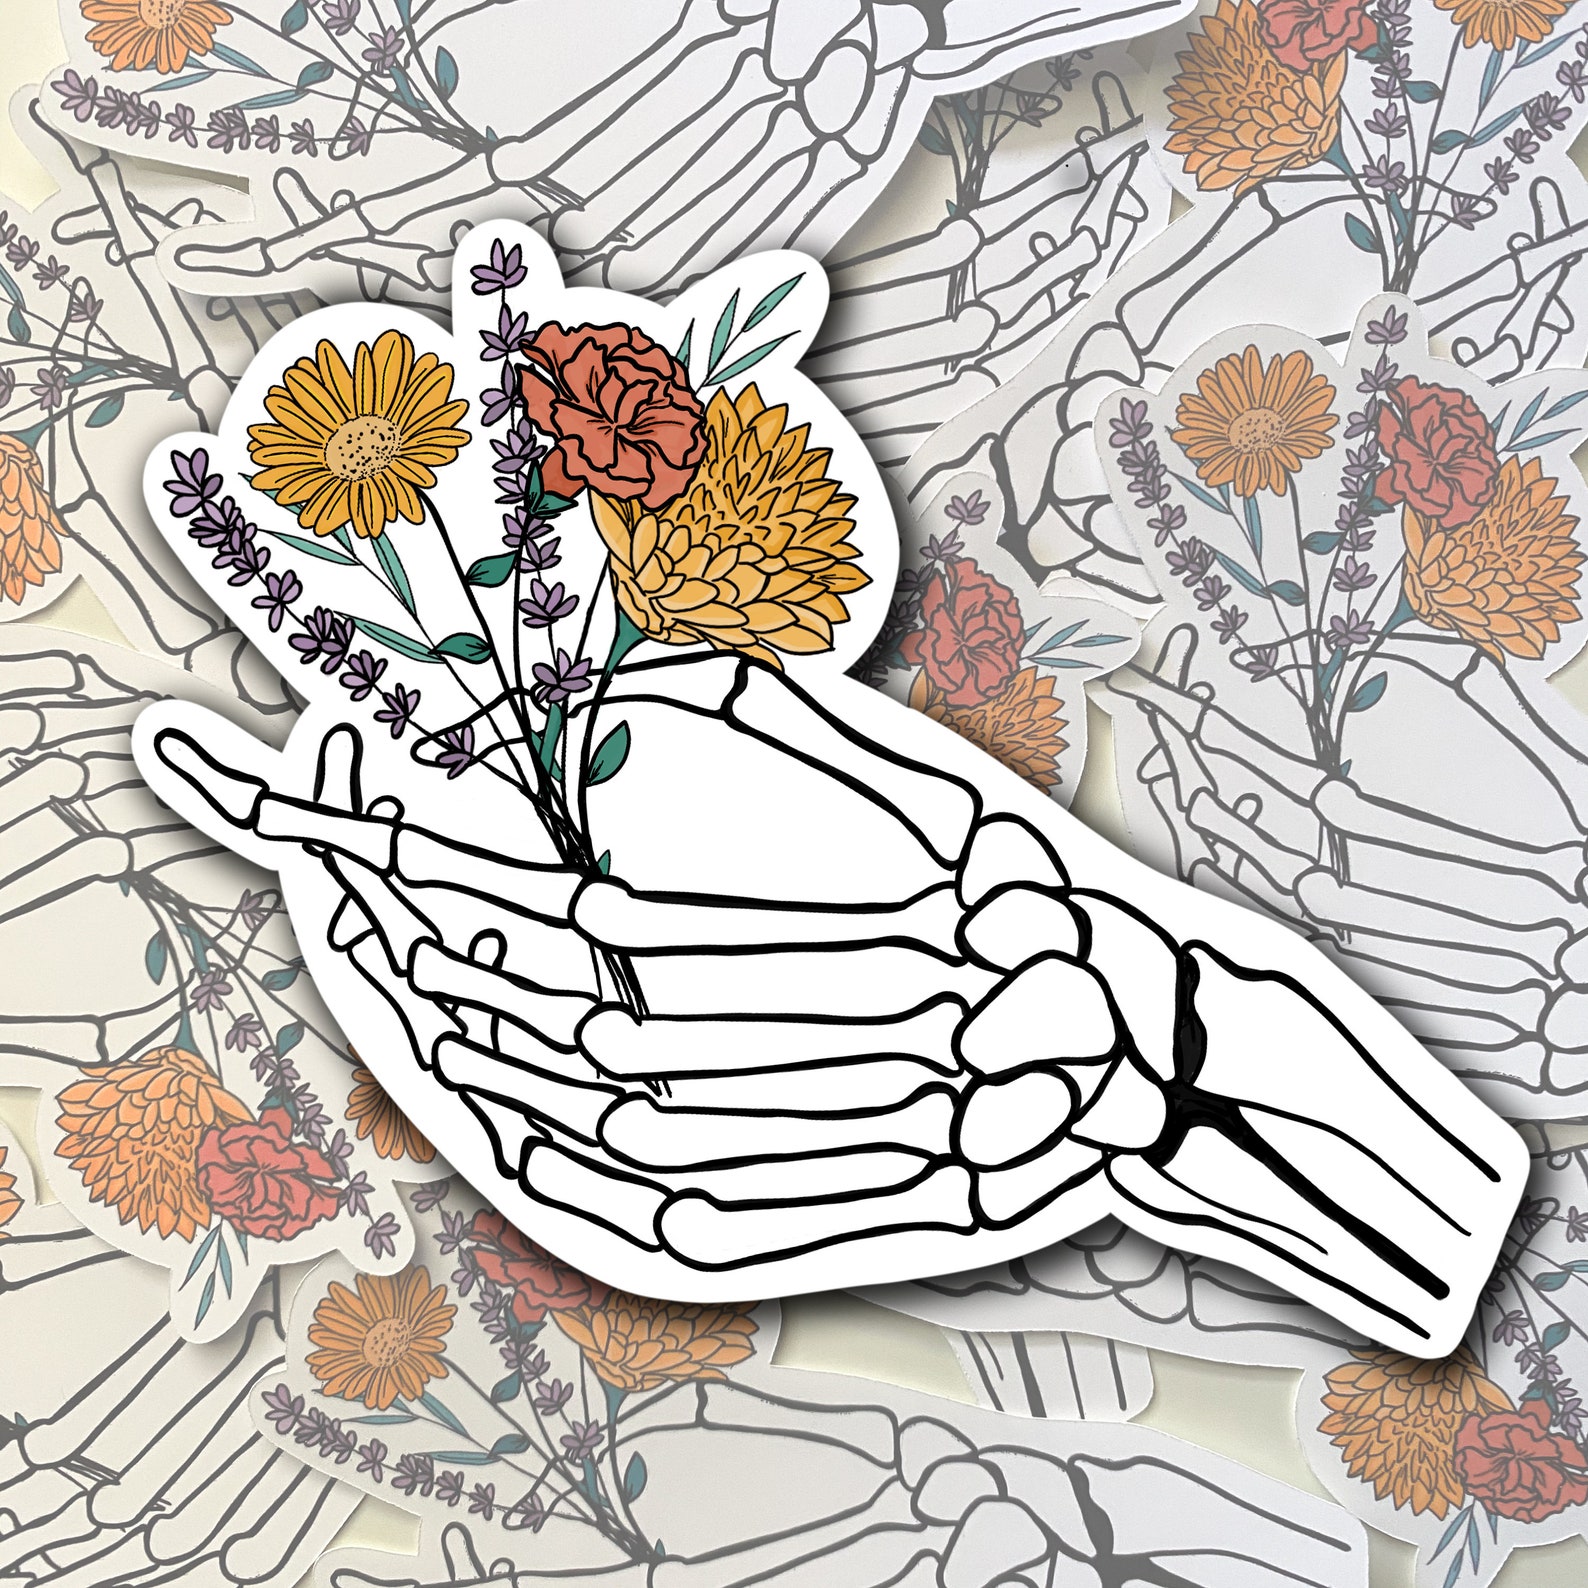 Skeleton Flower Hand Skeleton Hand Holding Wild Flowers | Etsy